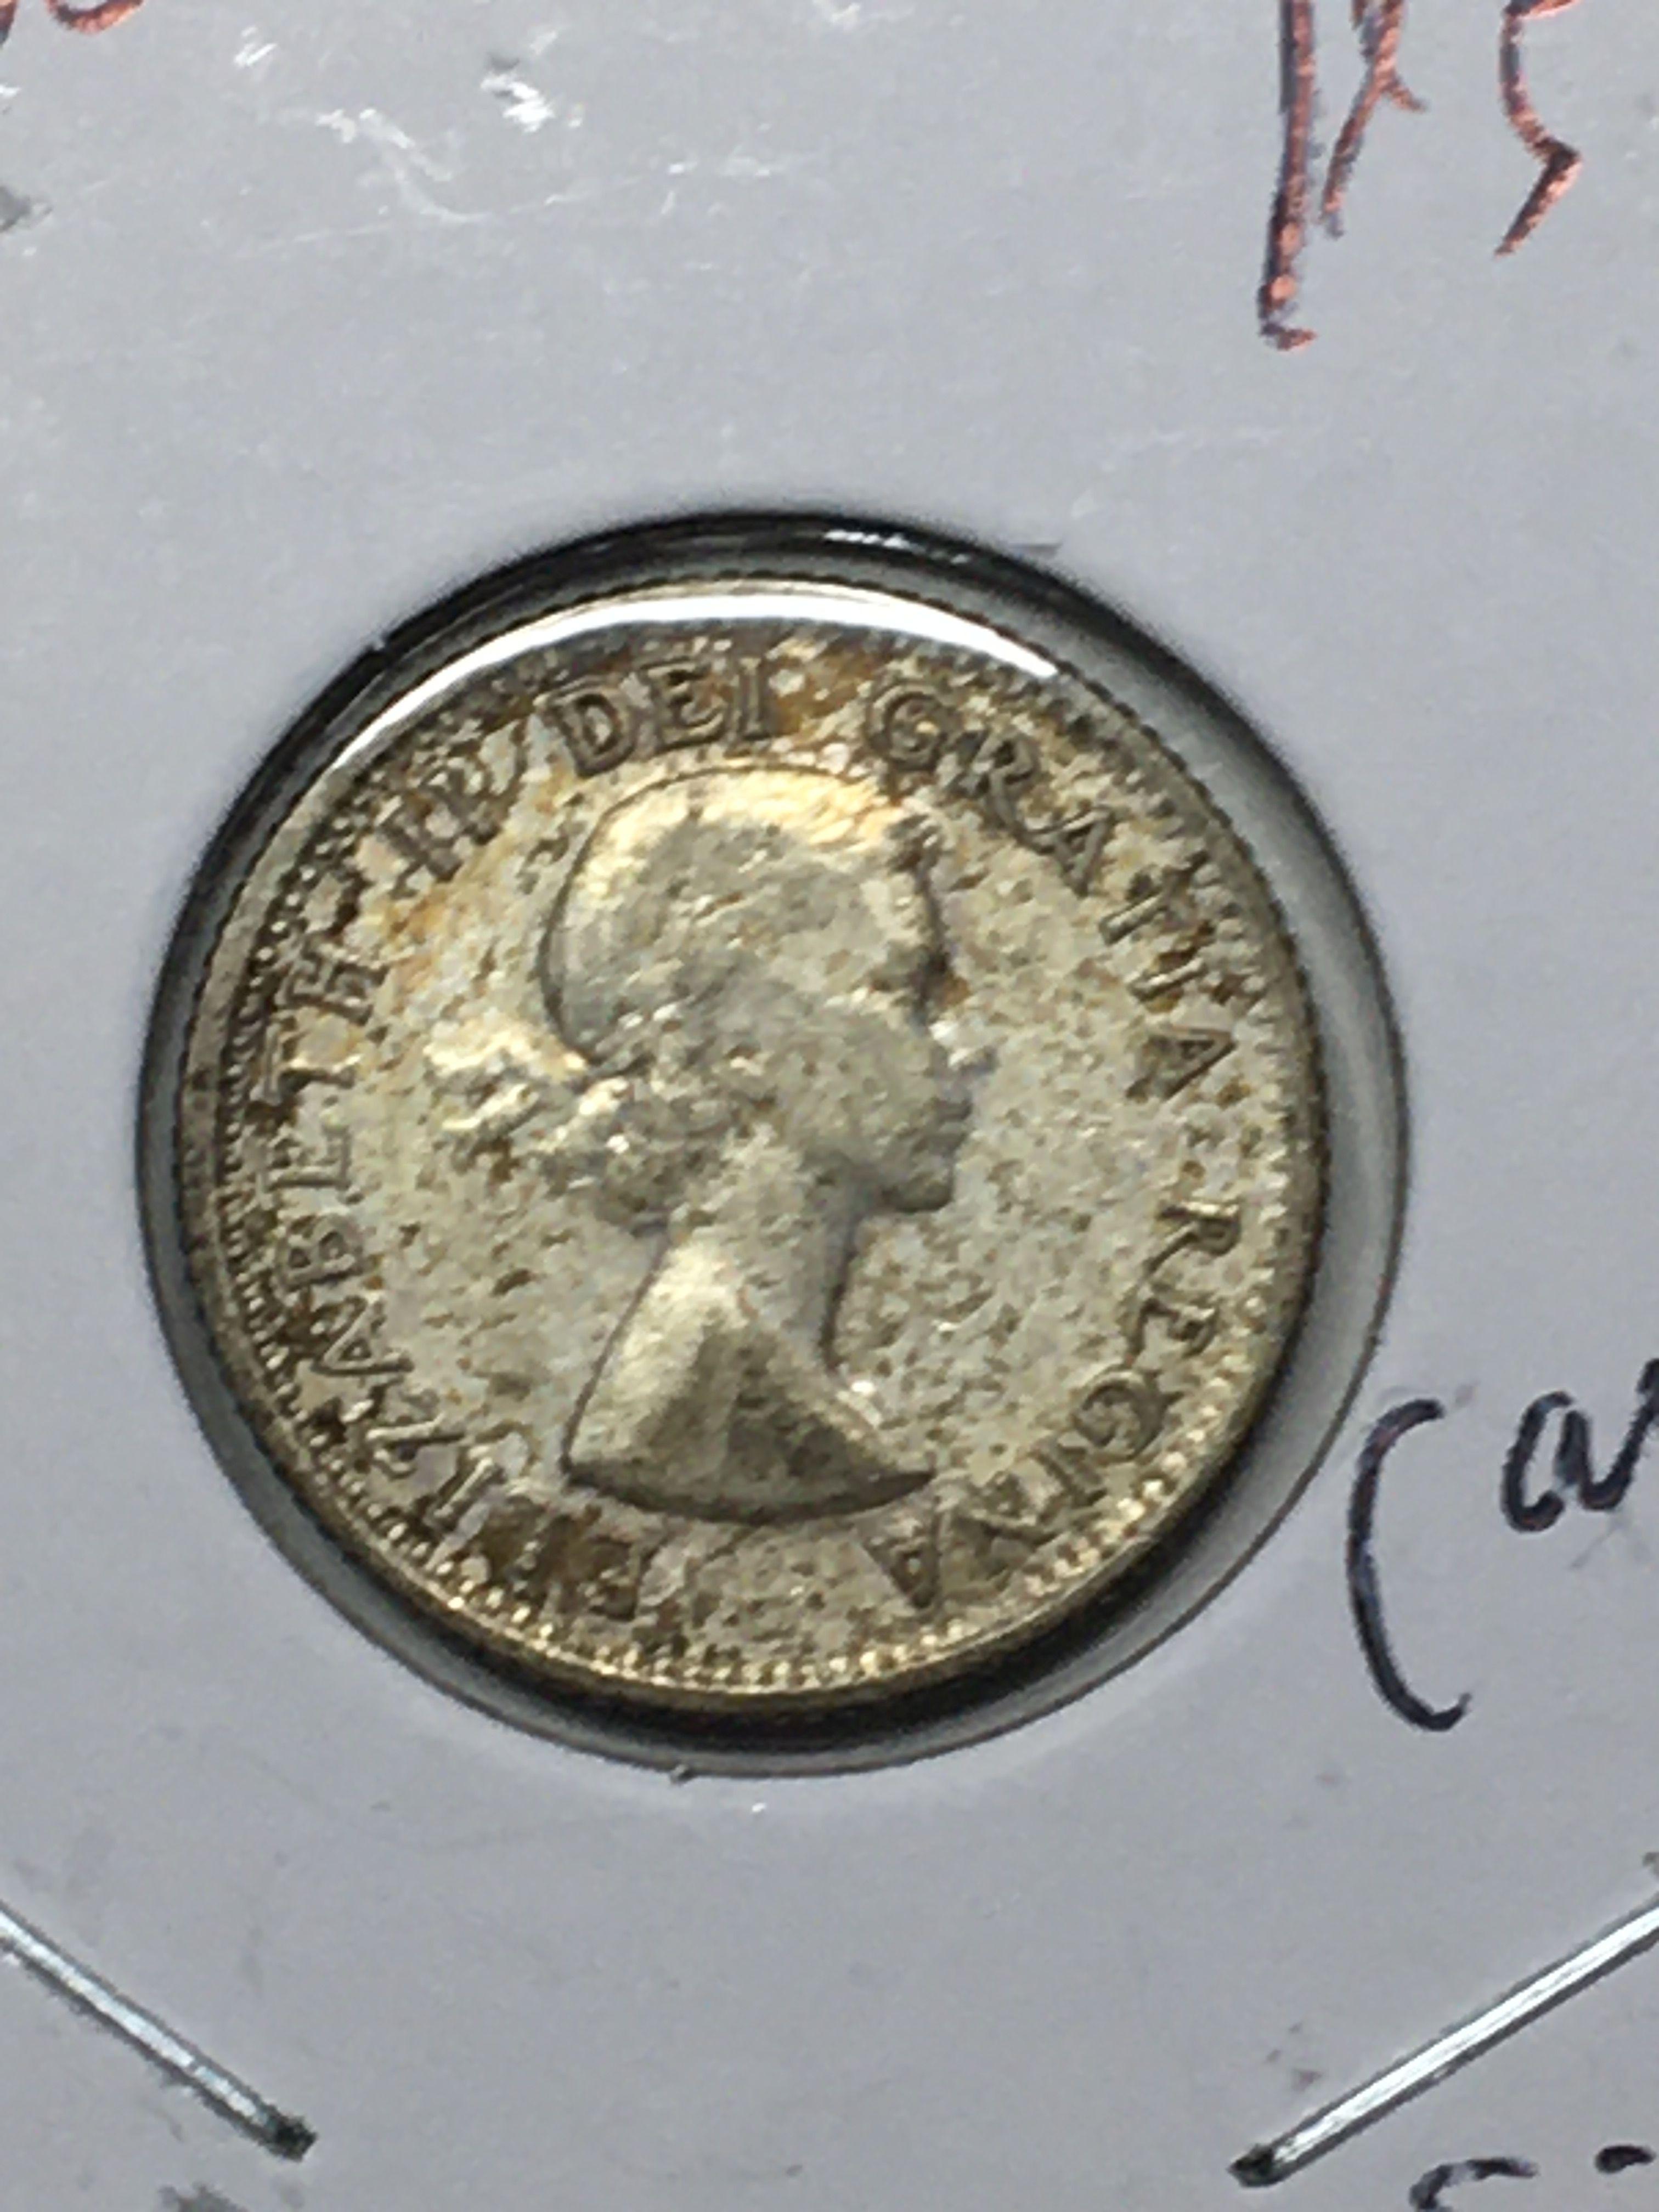 Canada Silver Dime 1953